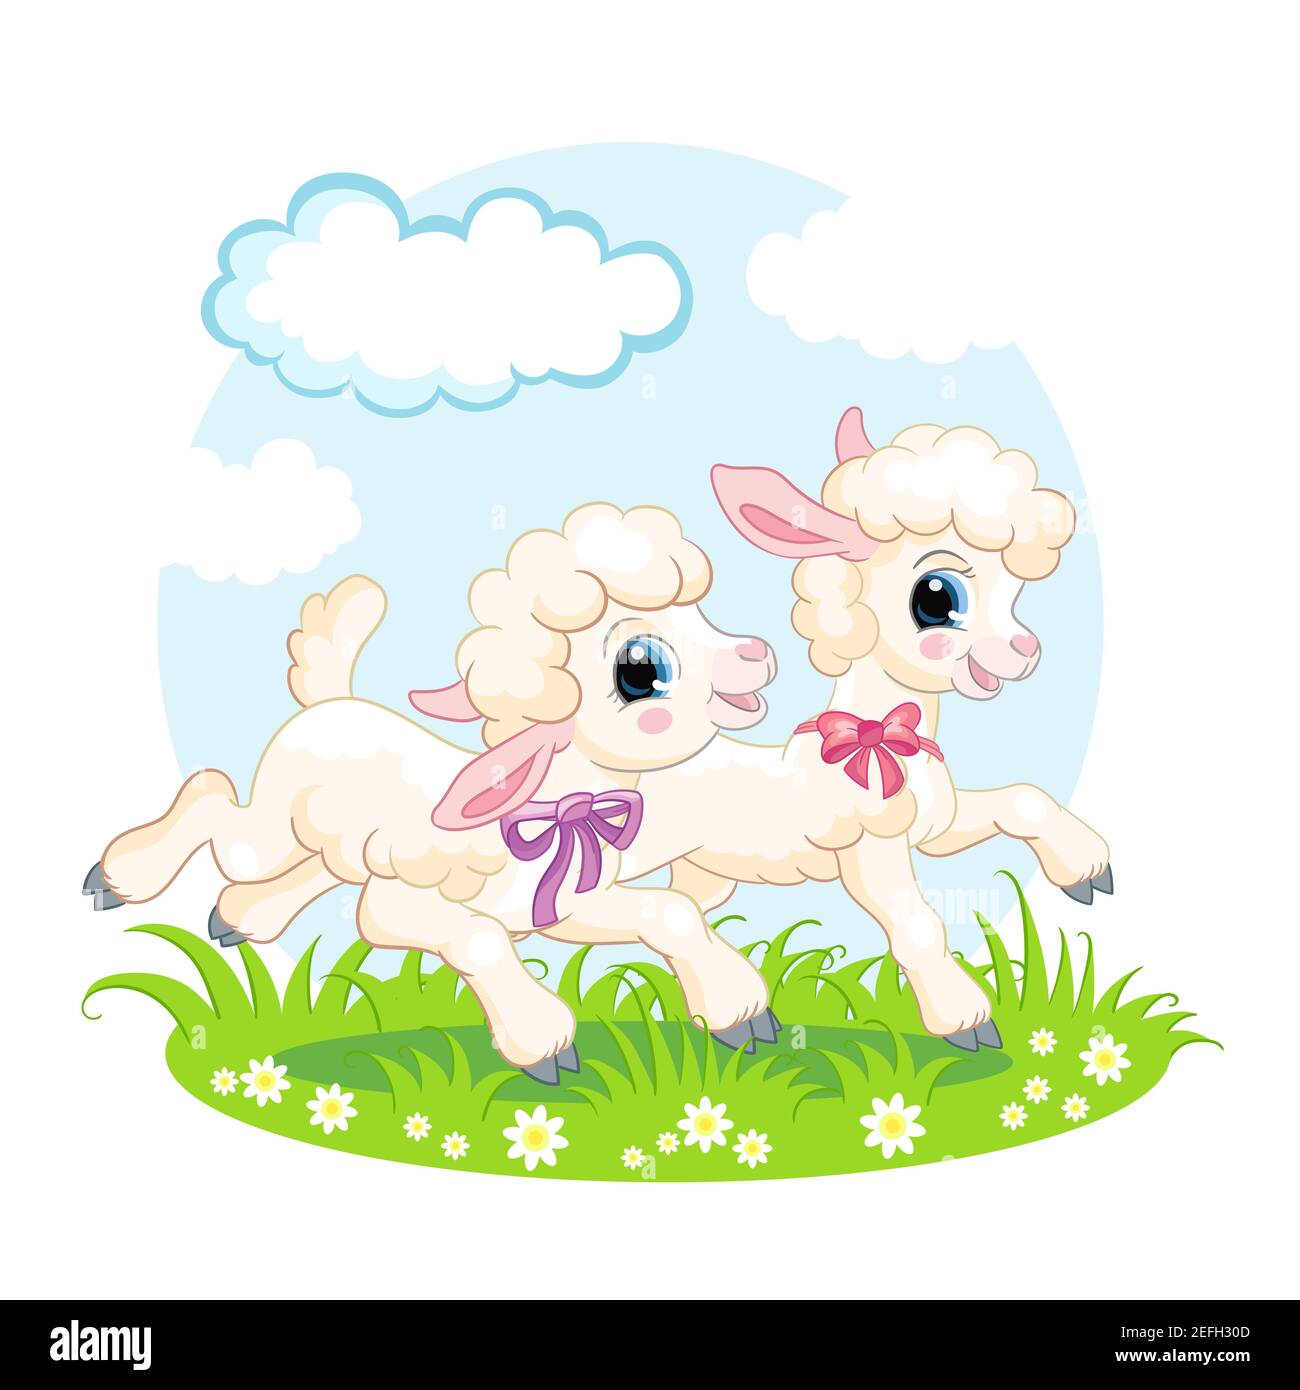 Nette Comic-Figuren zwei Lämmer laufen auf einer Blumenwiese. Vektor-isolierte Illustration. Für Postkarte, Poster, Kindergartengestaltung, Grußkarte, stic Stock Vektor